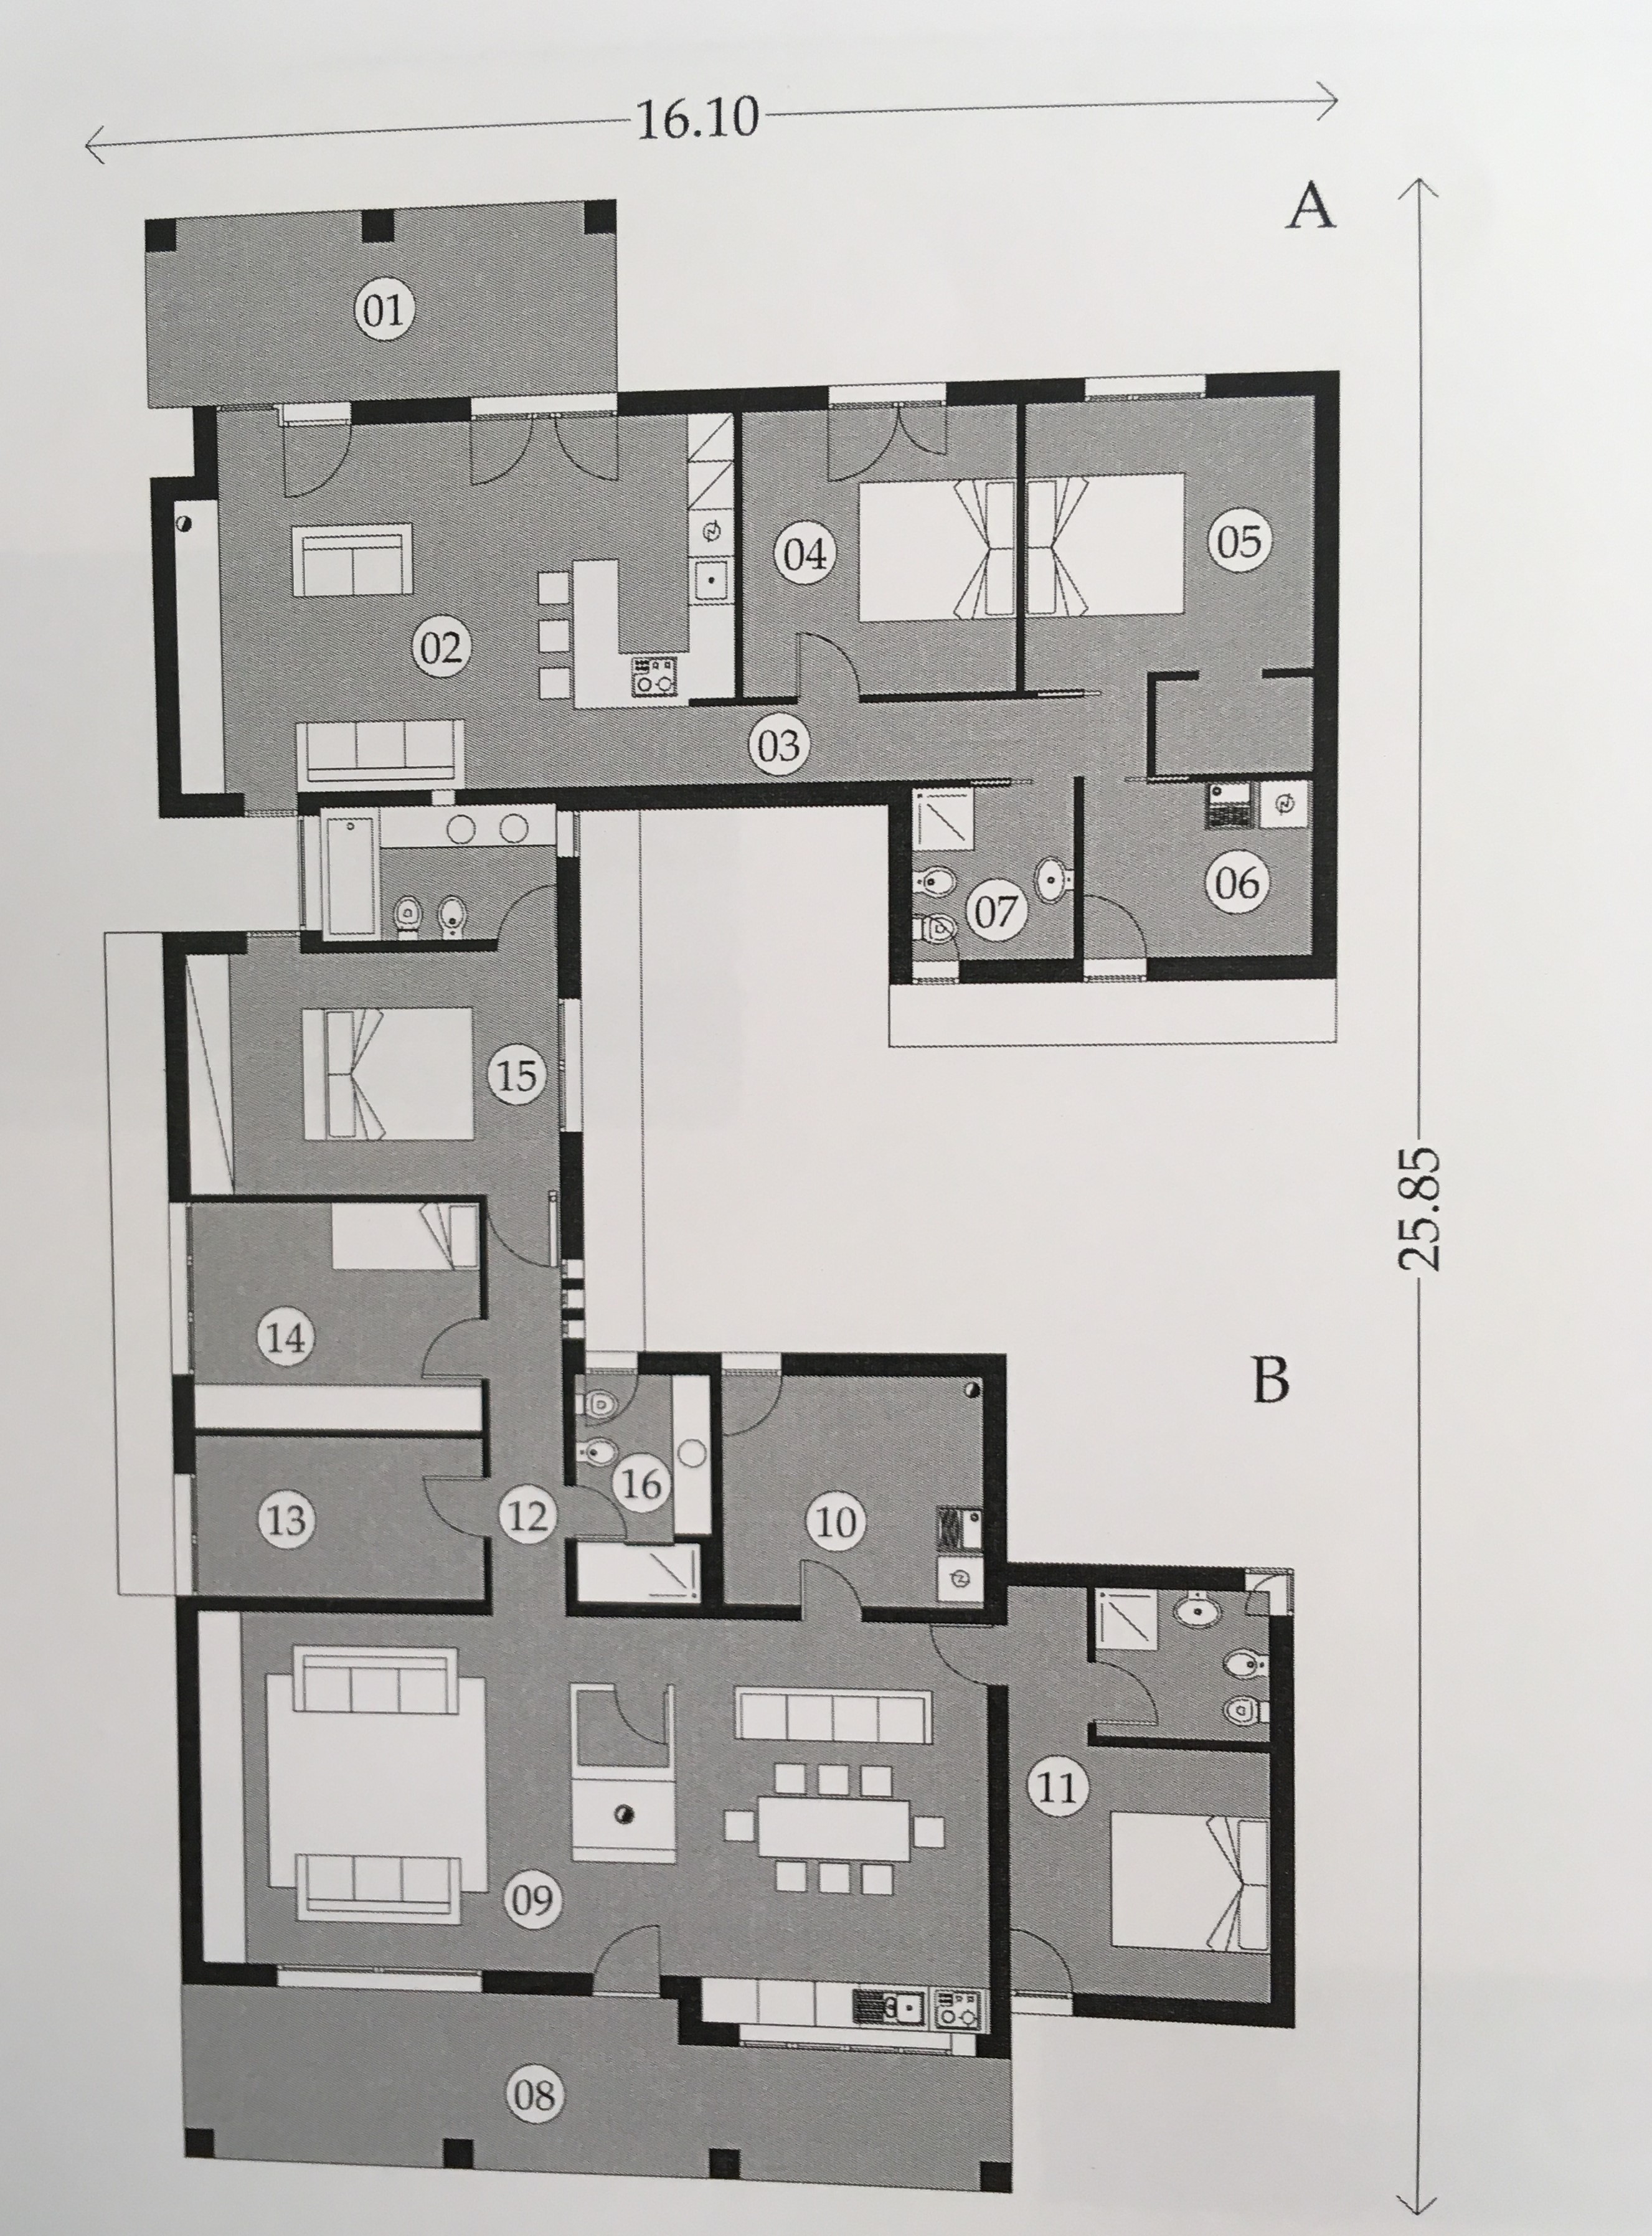 Planimetria della costruzione Casa in Legno modello Casa Moderna Pordenone  di RIKO-HISE srl - Arch. Daniele Bonzi